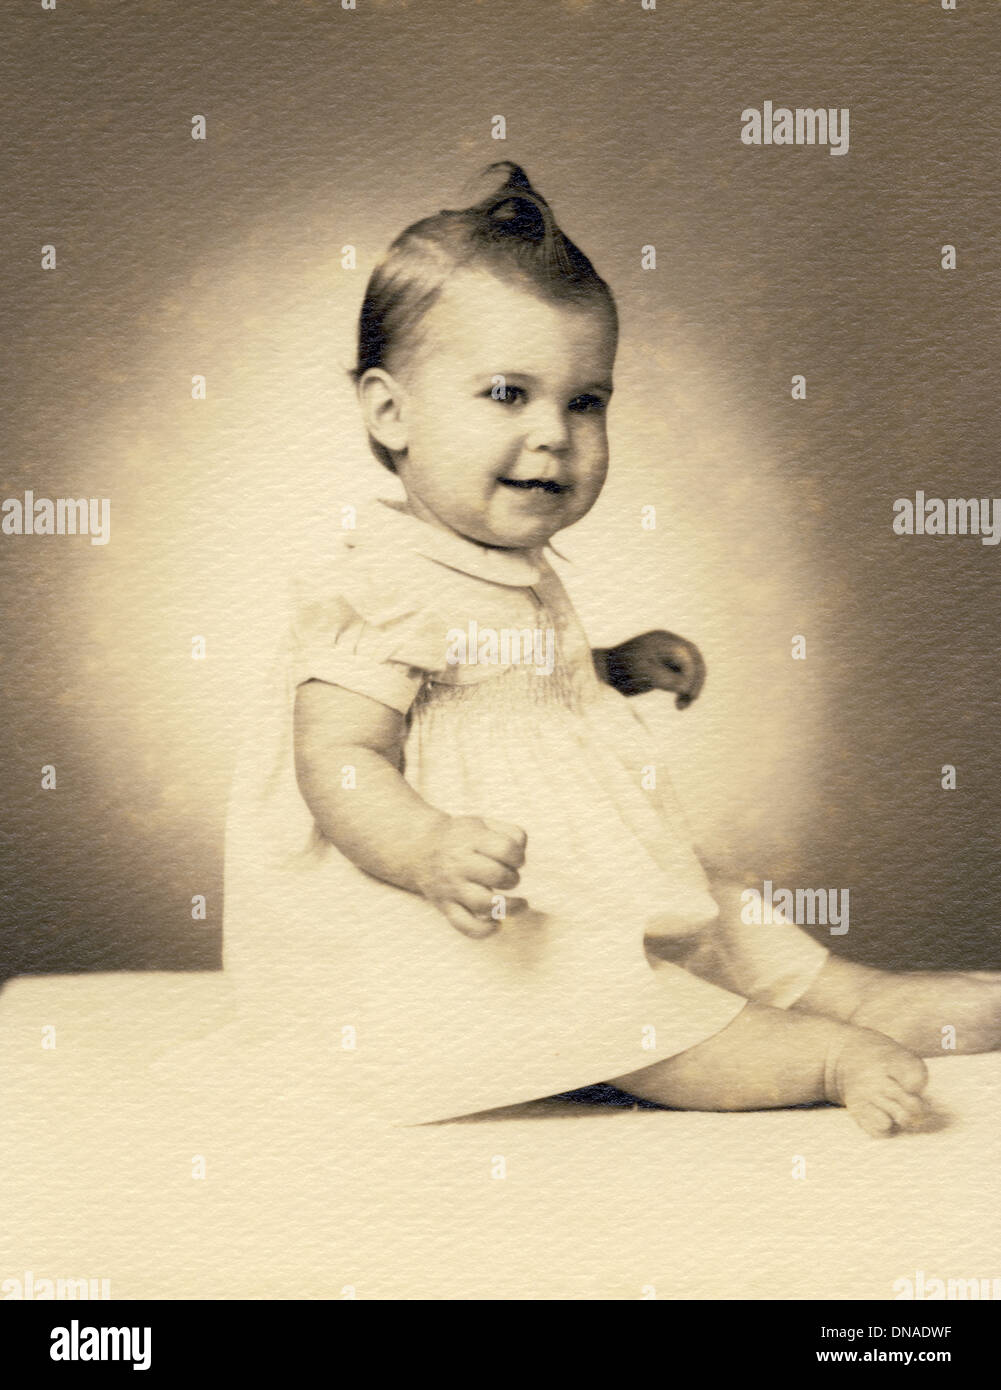 Baby Girl Portrait, 1960's Stock Photo